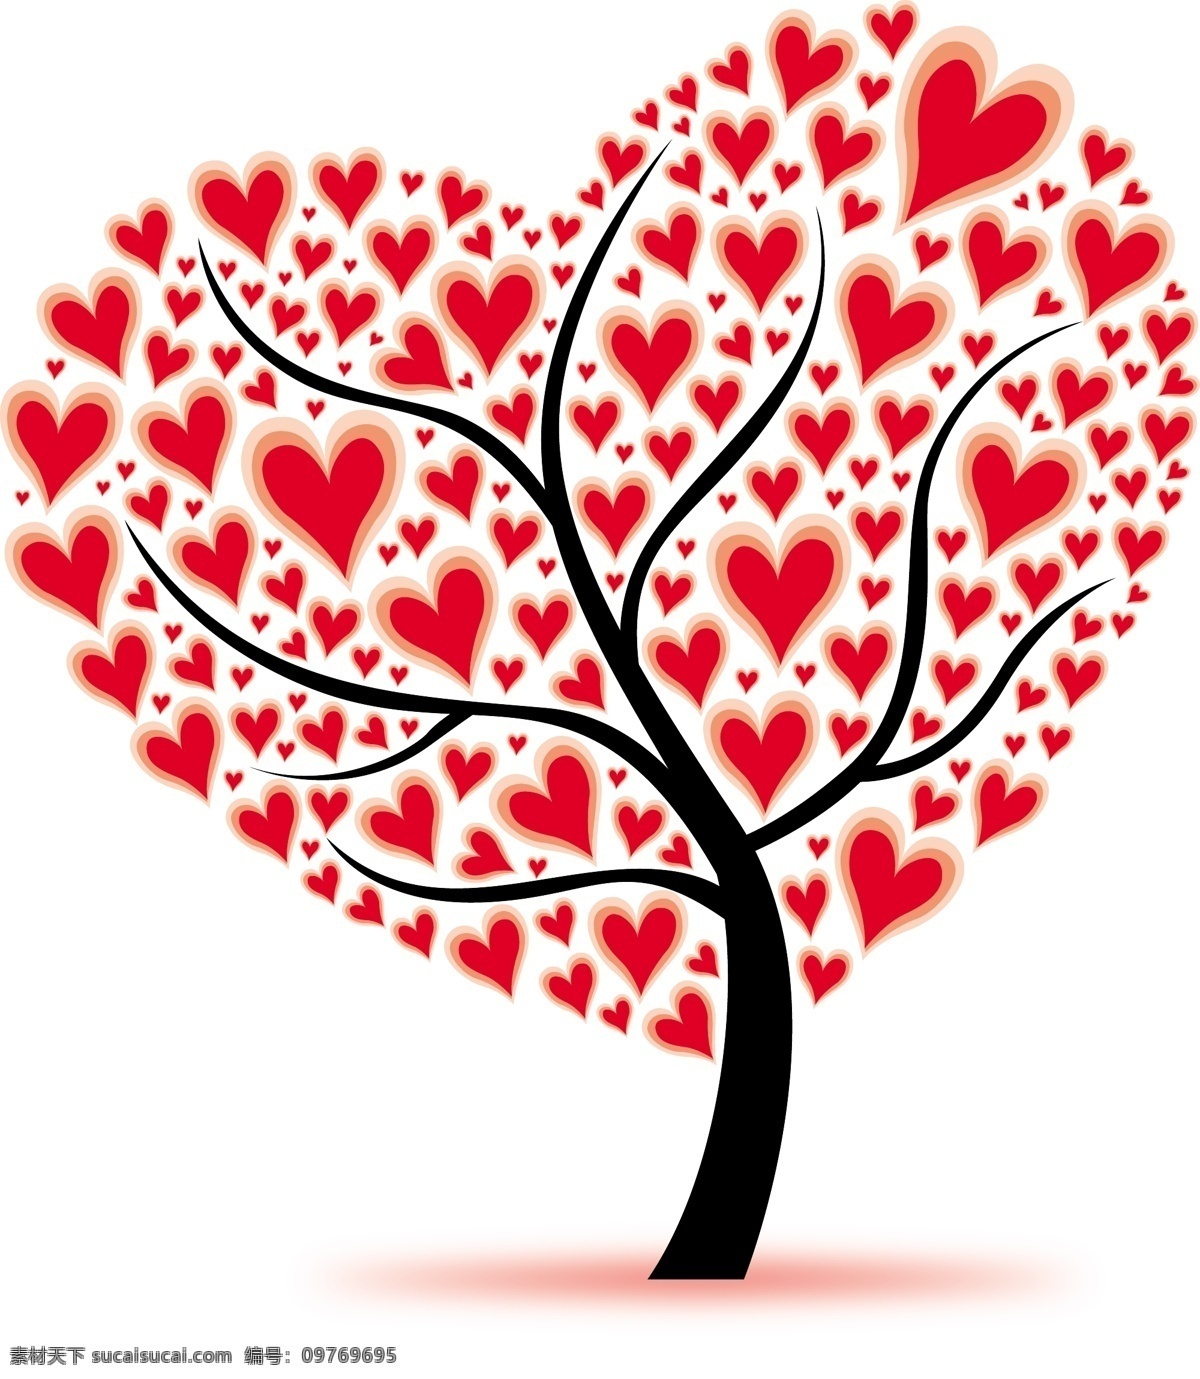 爱情树 爱情 插画 爱情插画 卡通插画 浪漫卡通 树 心形 矢量图 其他矢量图